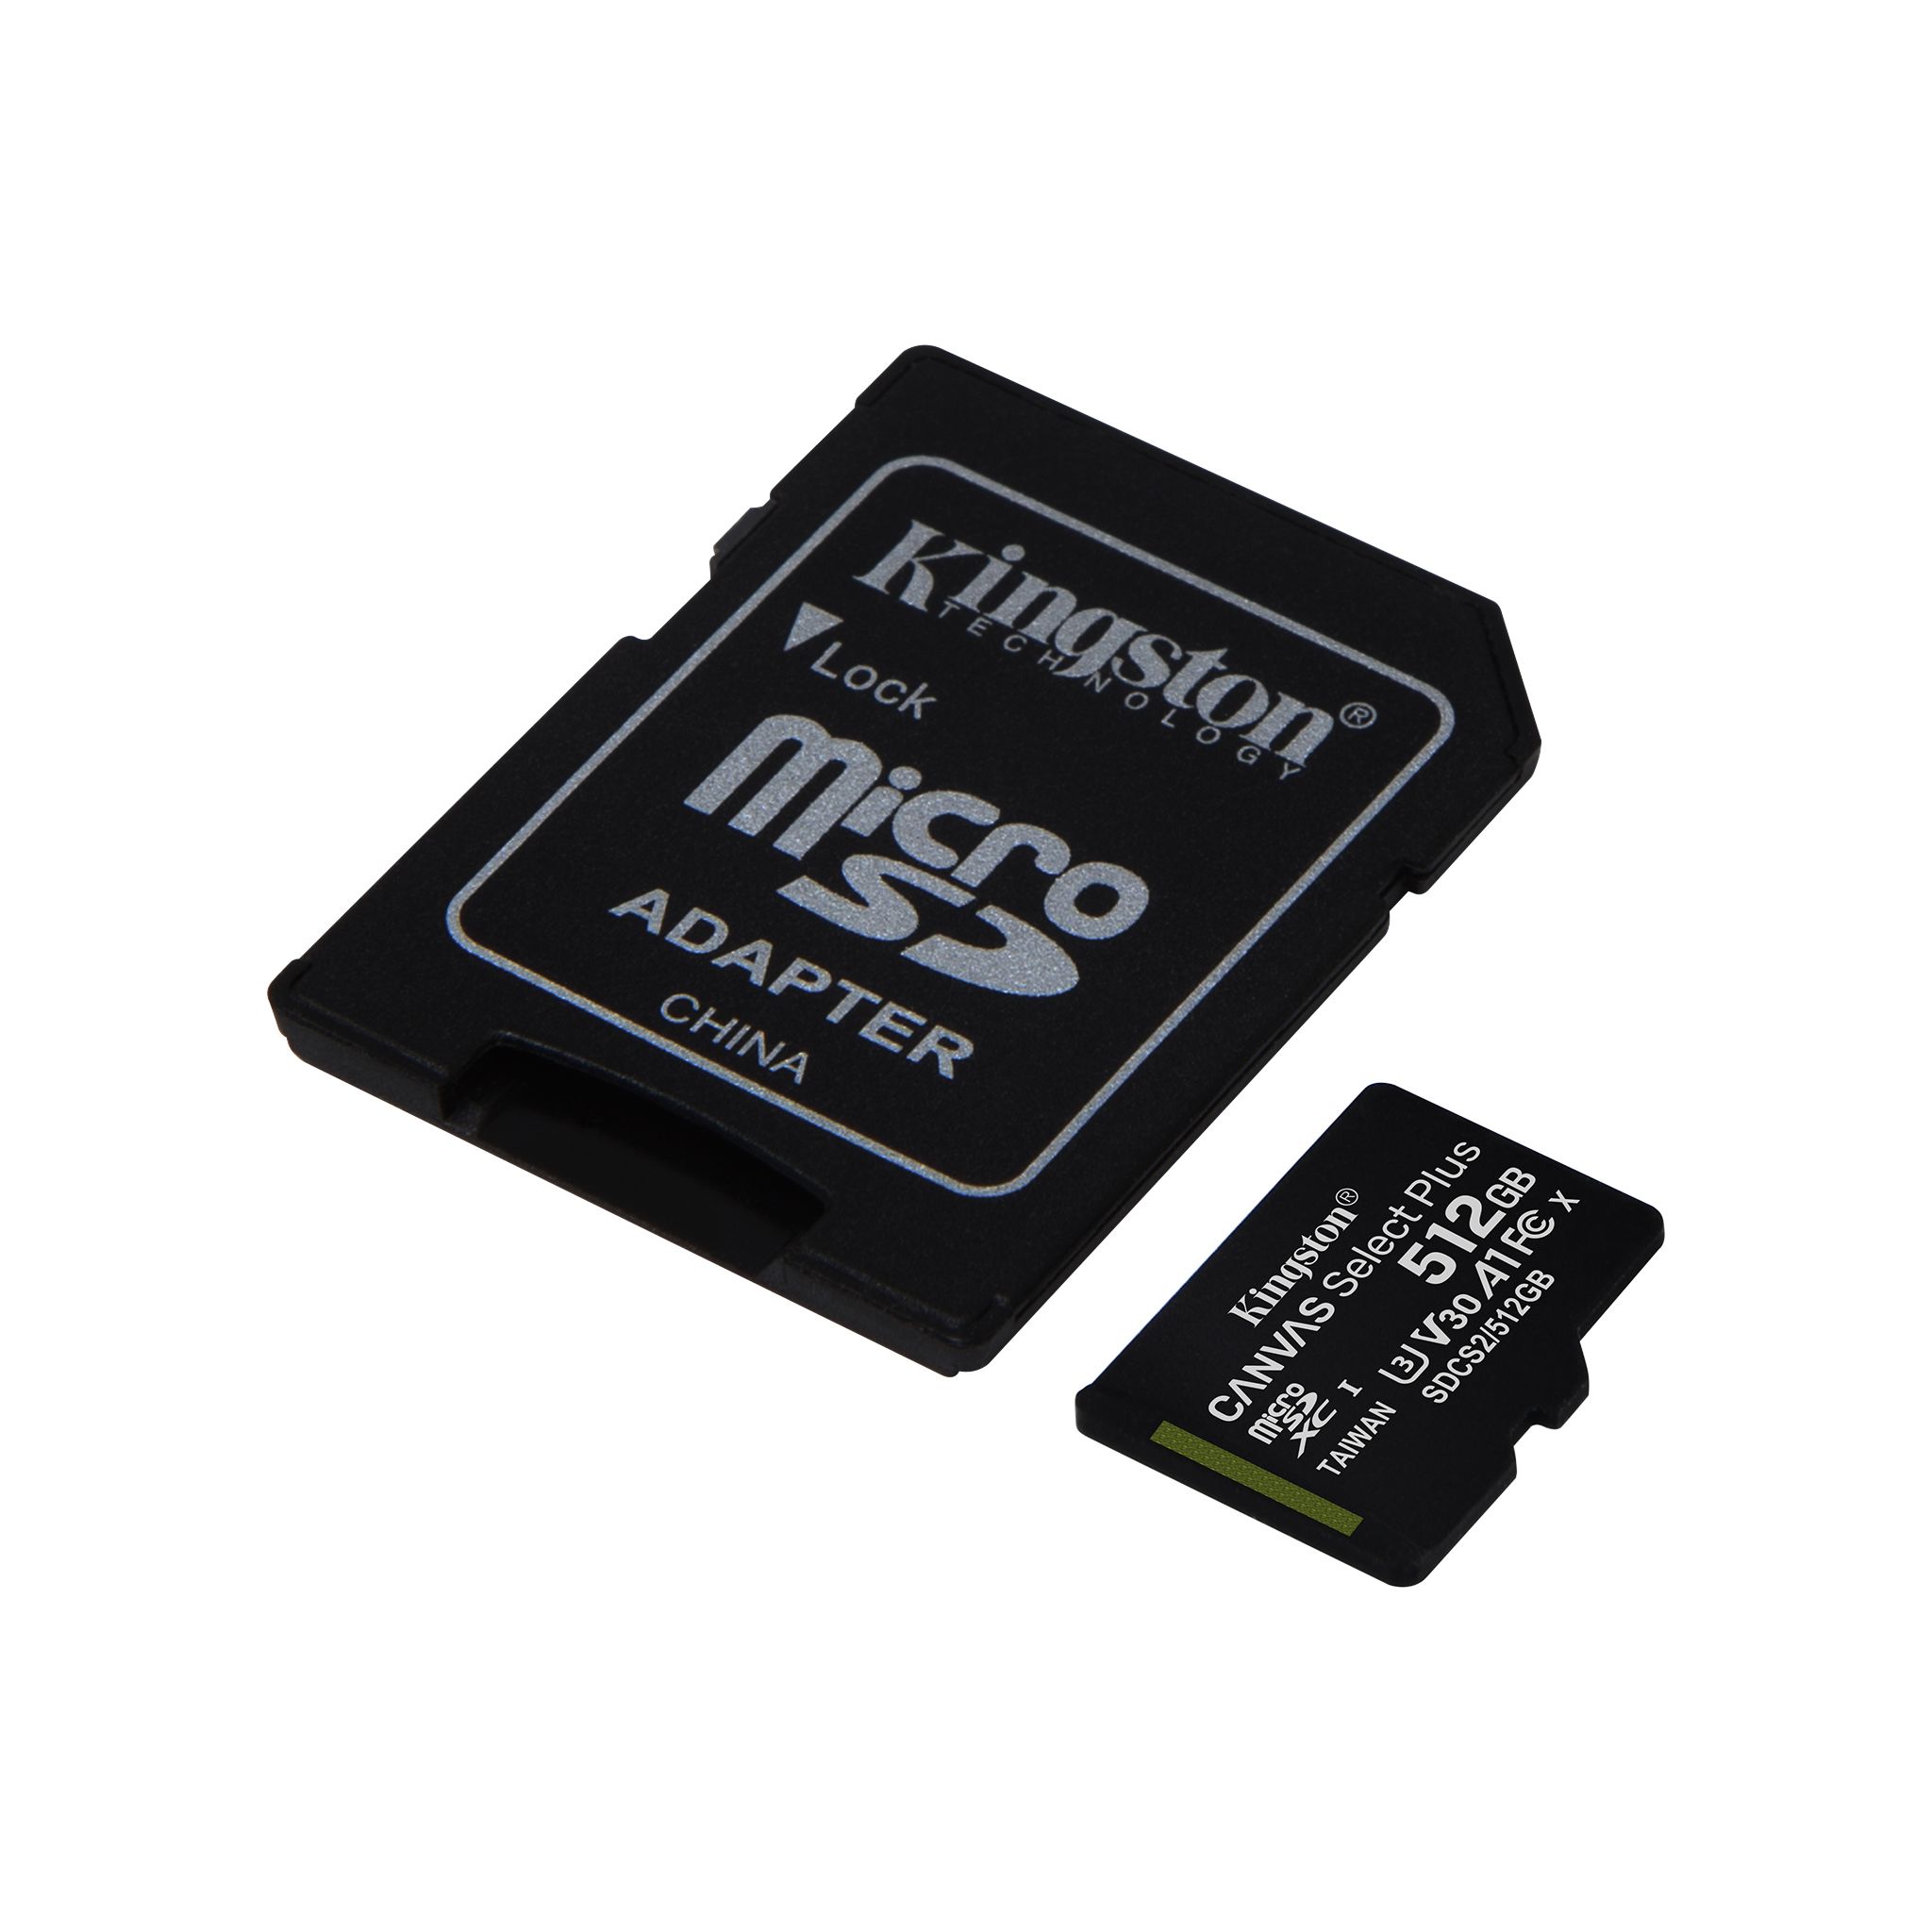 Carte micro SD, 64 go, EMTEC, NF